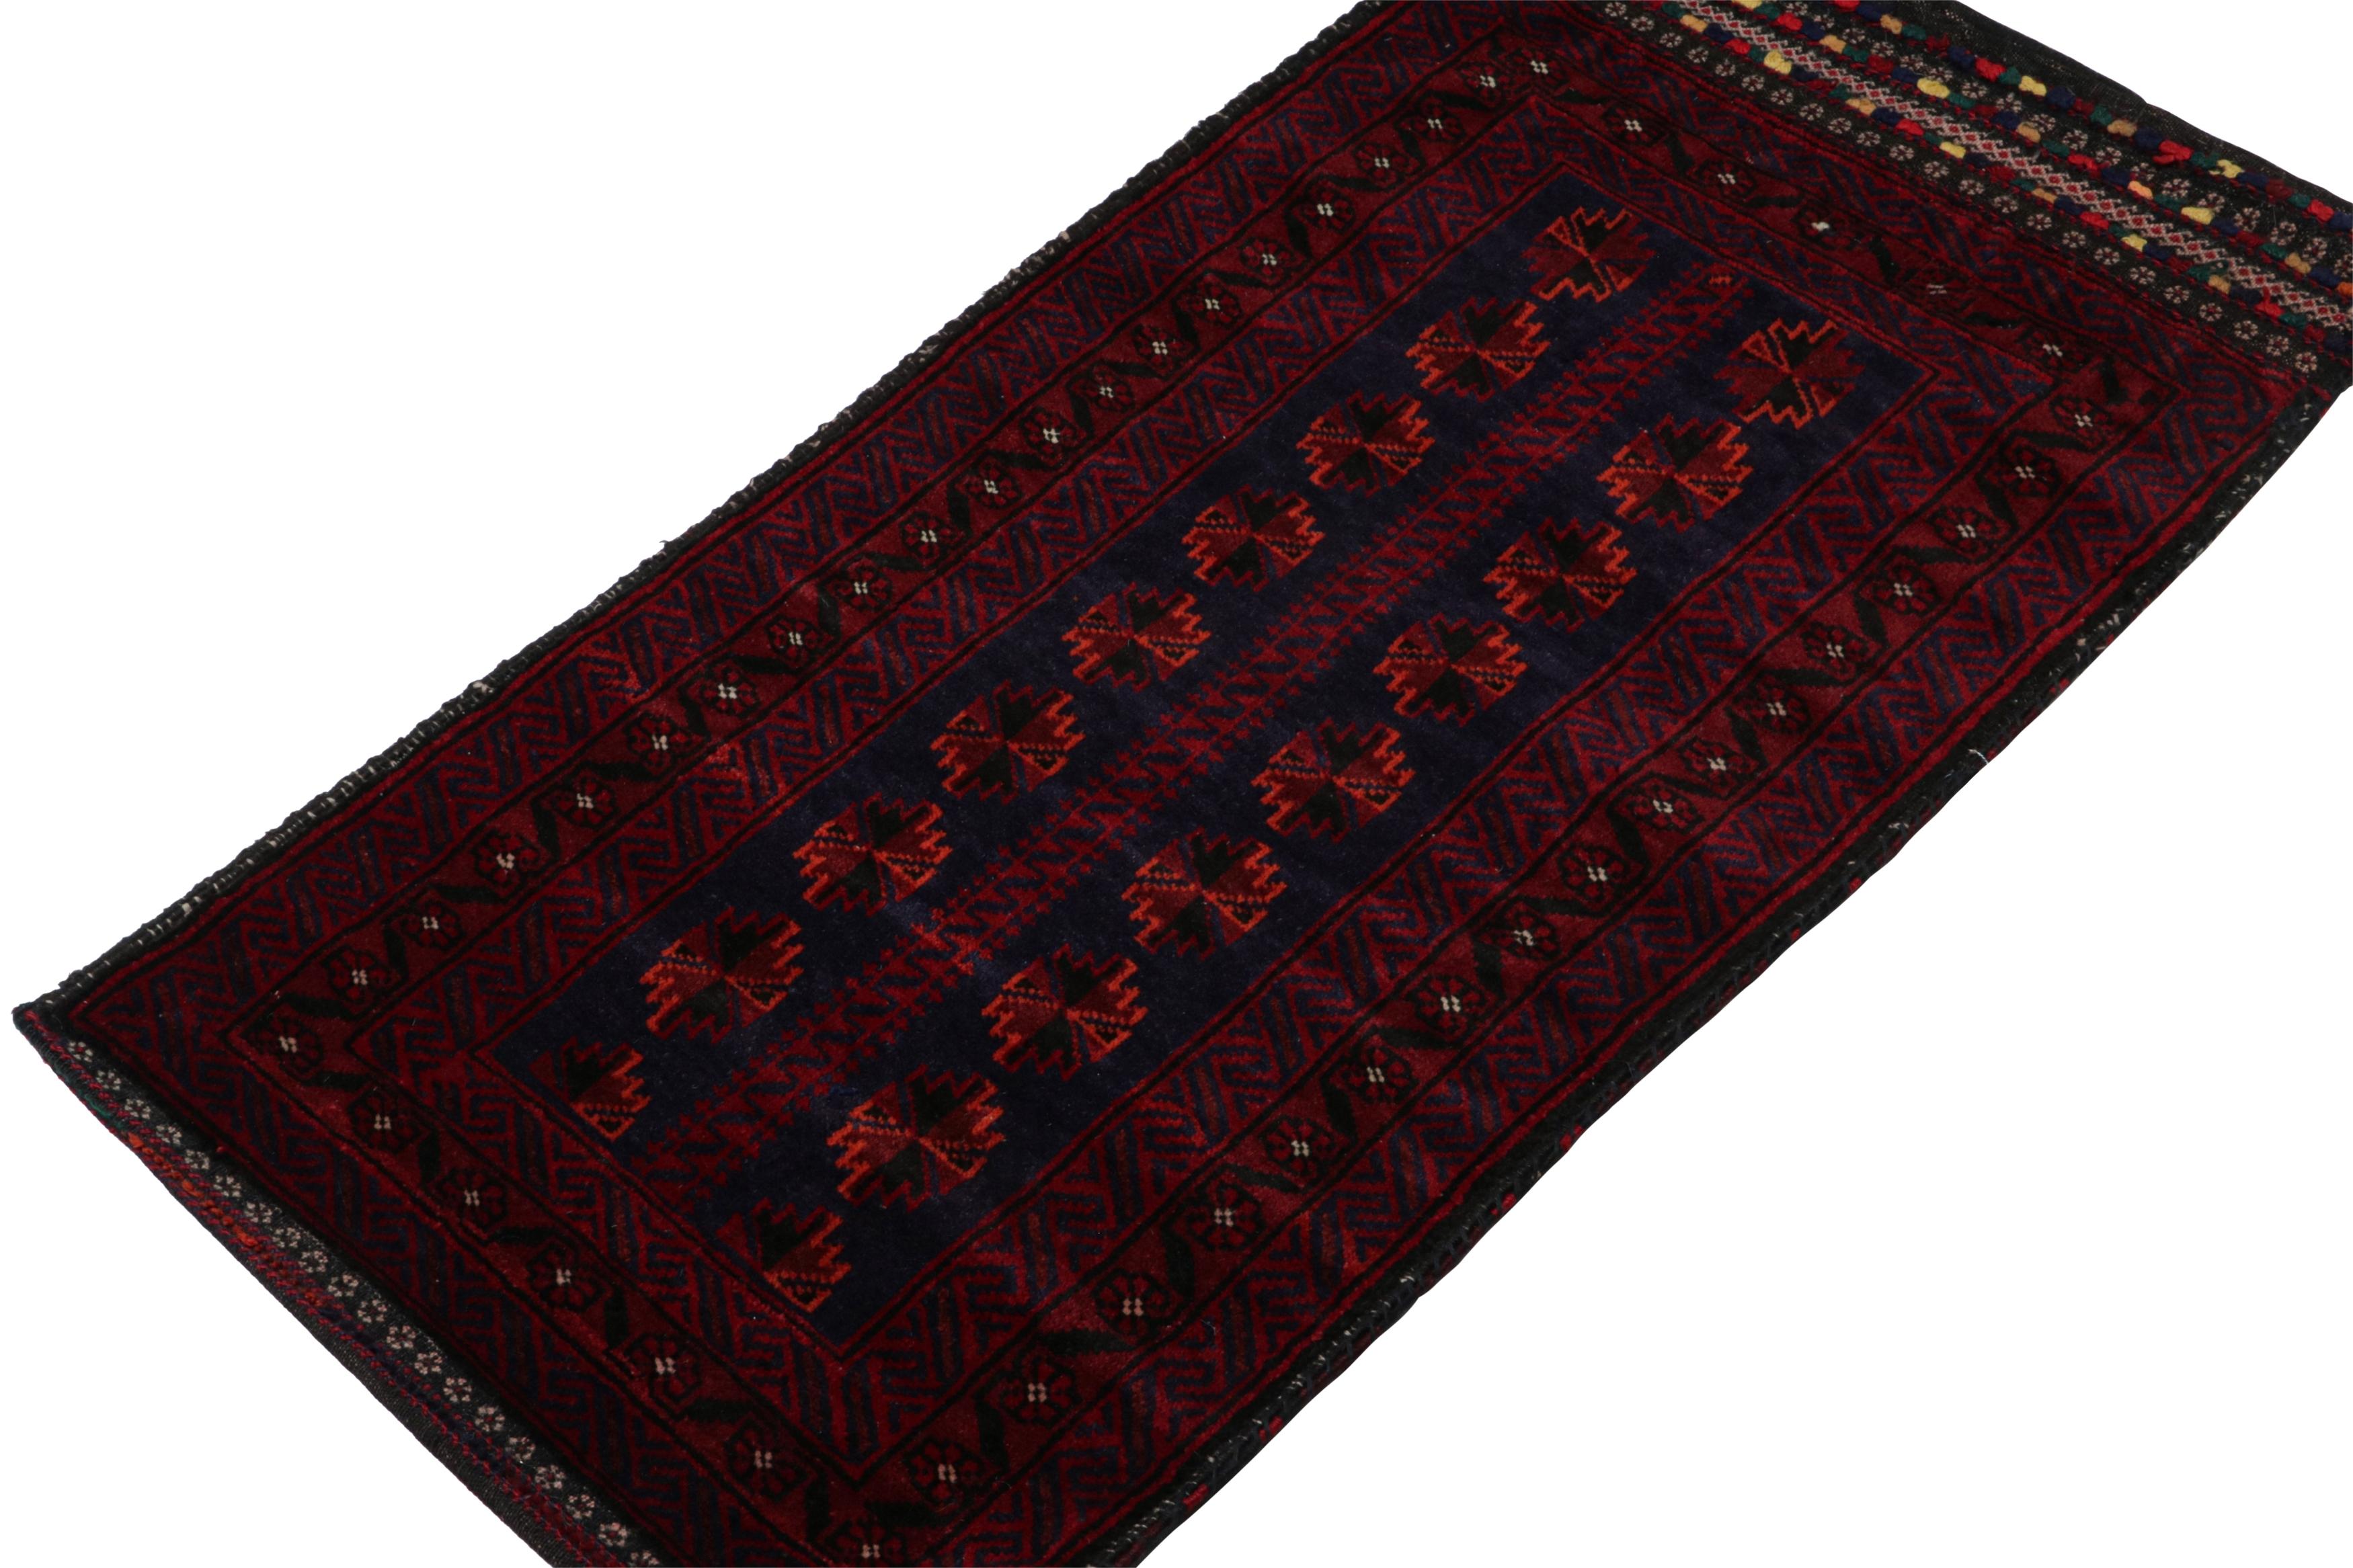 Dieser handgeknüpfte 2x4 Belutsch-Perserteppich aus den 1950er Jahren ist der jüngste Neuzugang in der Rug & Kilim'S Antique & Vintage Collection.

Über das Design:

Der Vintage-Teppich trägt Tribal-Muster in satten Rot-, Blau- und Schwarztönen mit